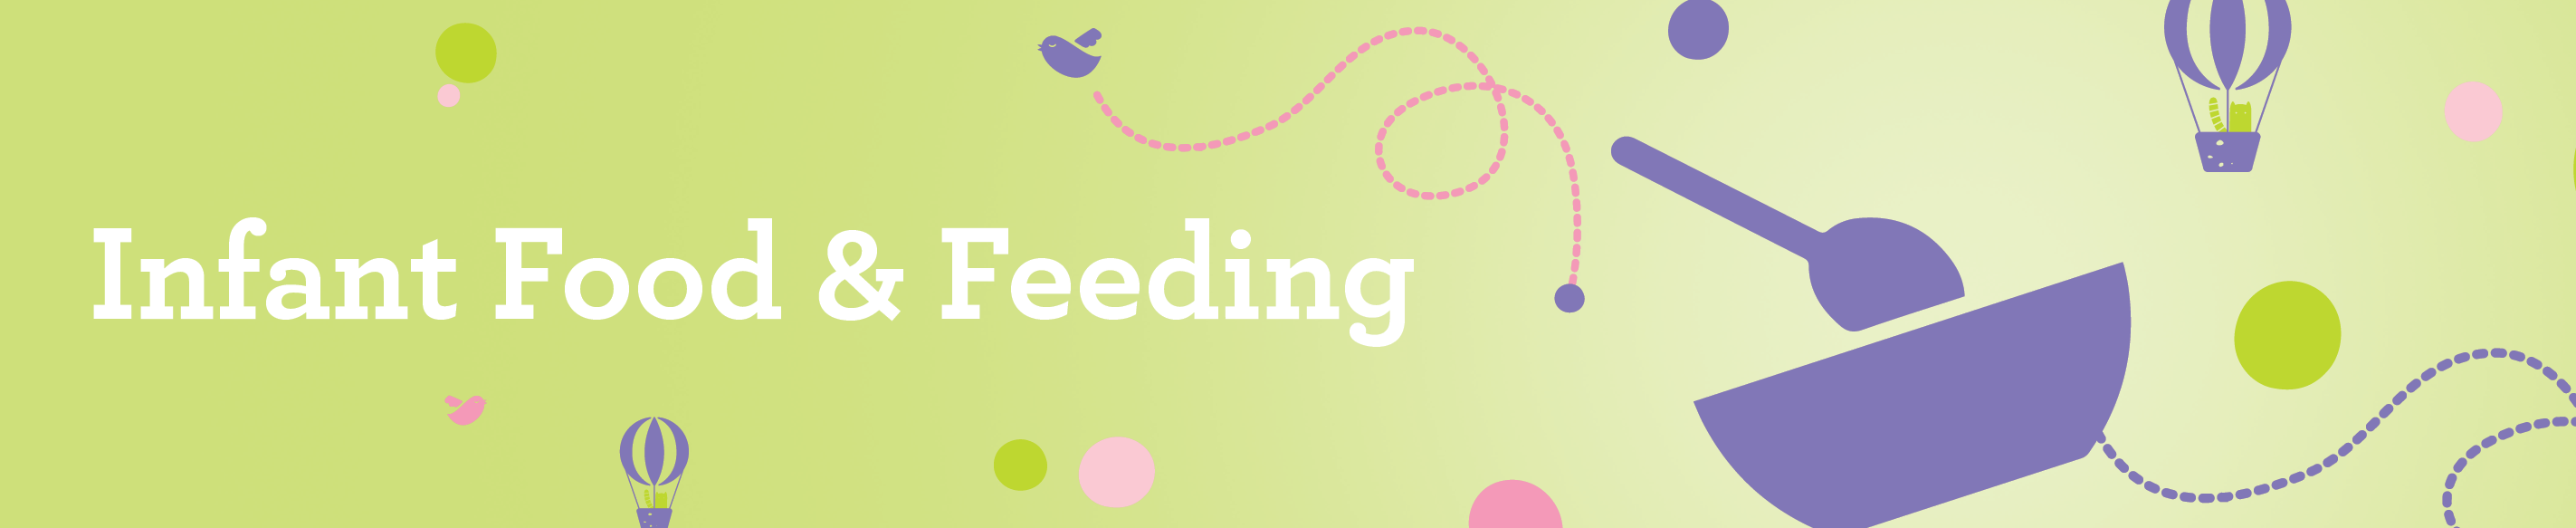 Infant Food & Feeding